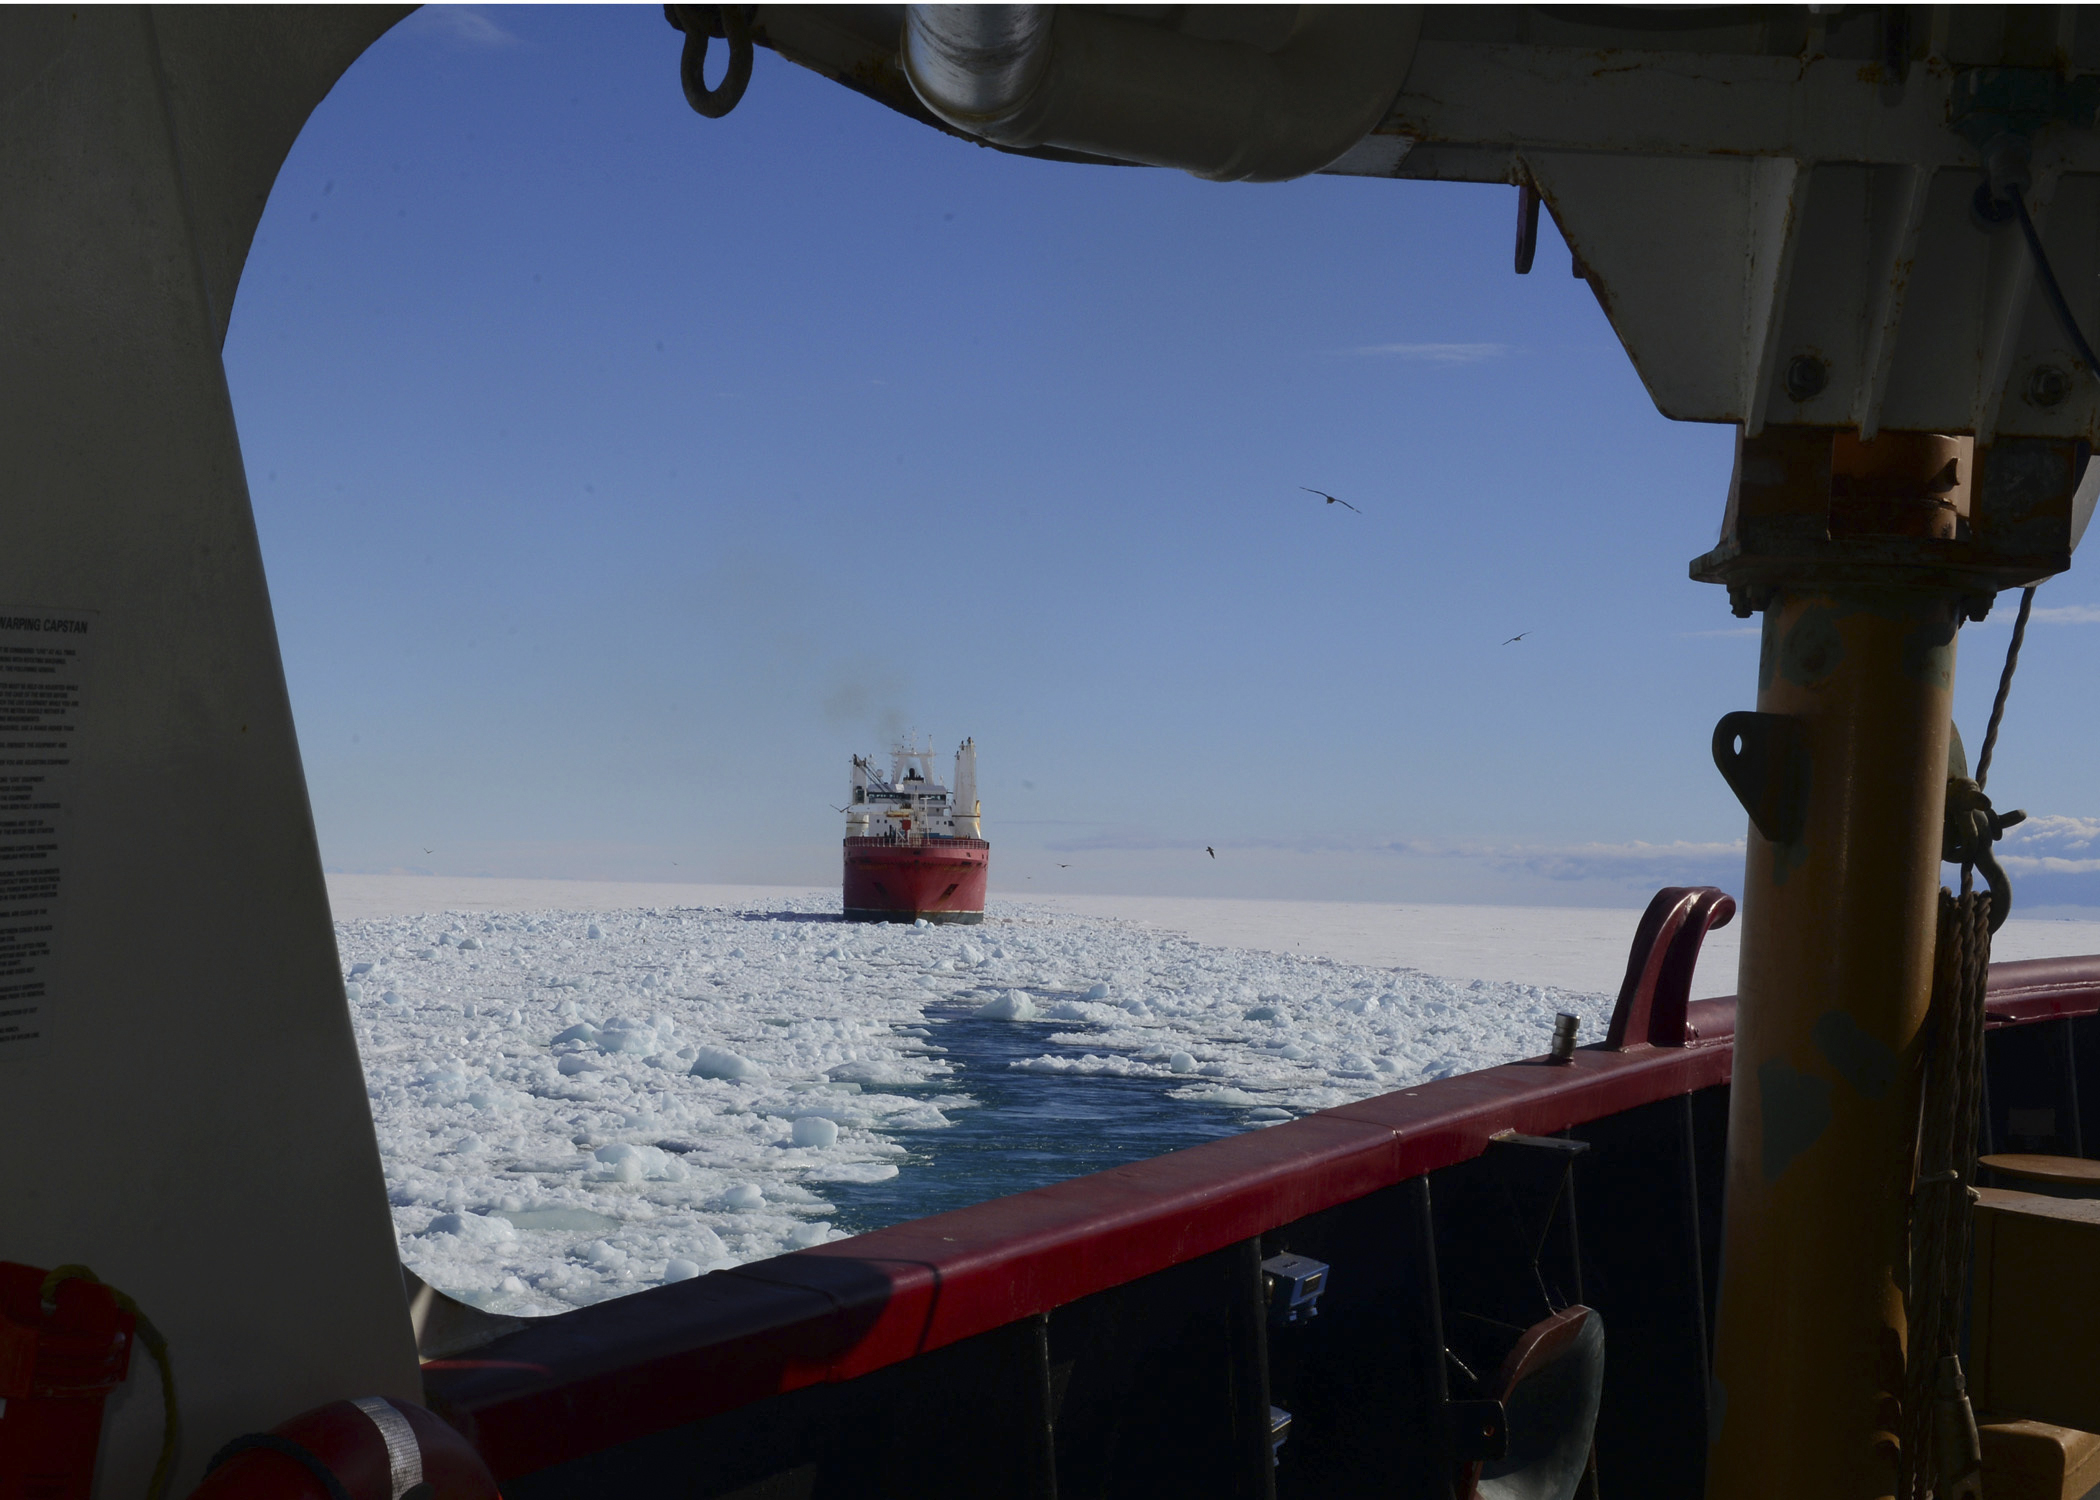 Mammoth Ice Breaker Frees Australian Vessel Trapped In The Frozen Ocean